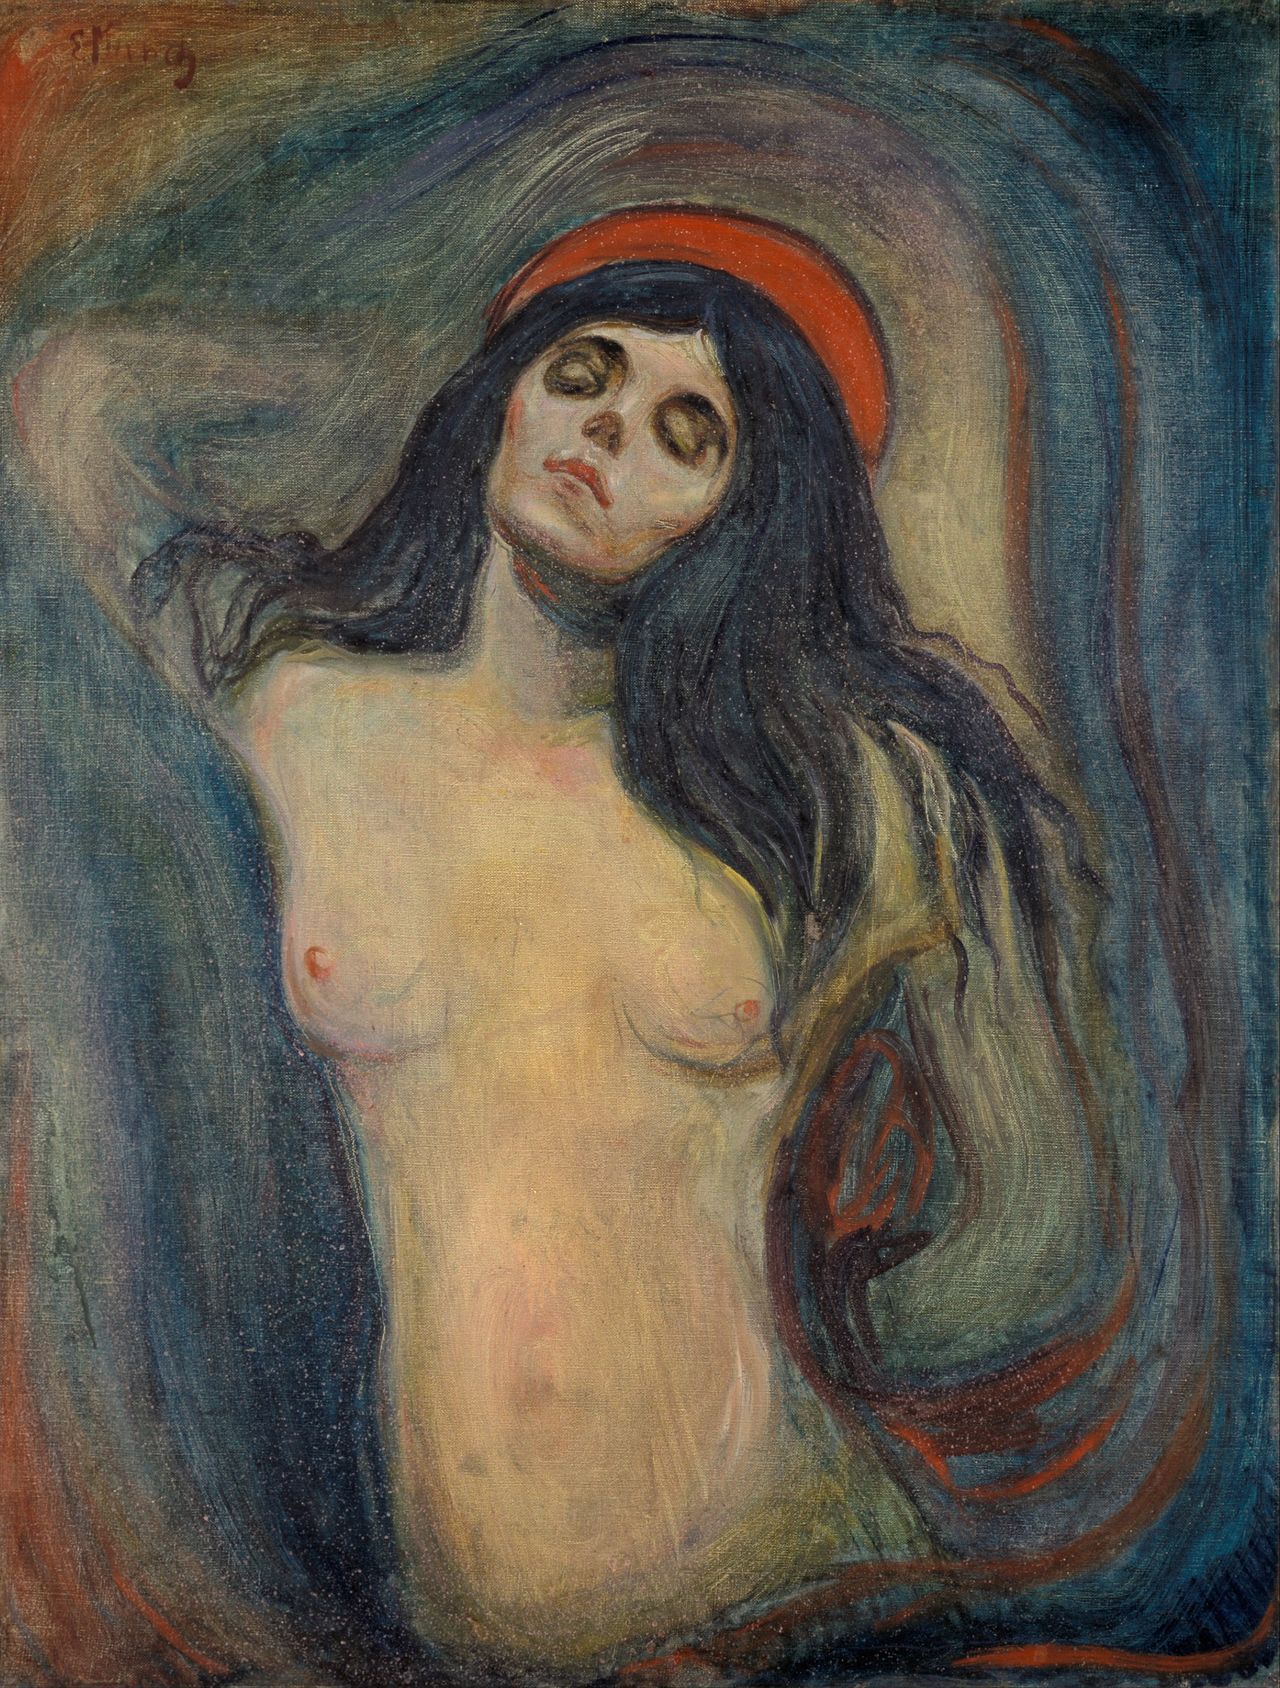 Εικόνα 2. Edvard Munch, Madonna, 1894, Munch Museum